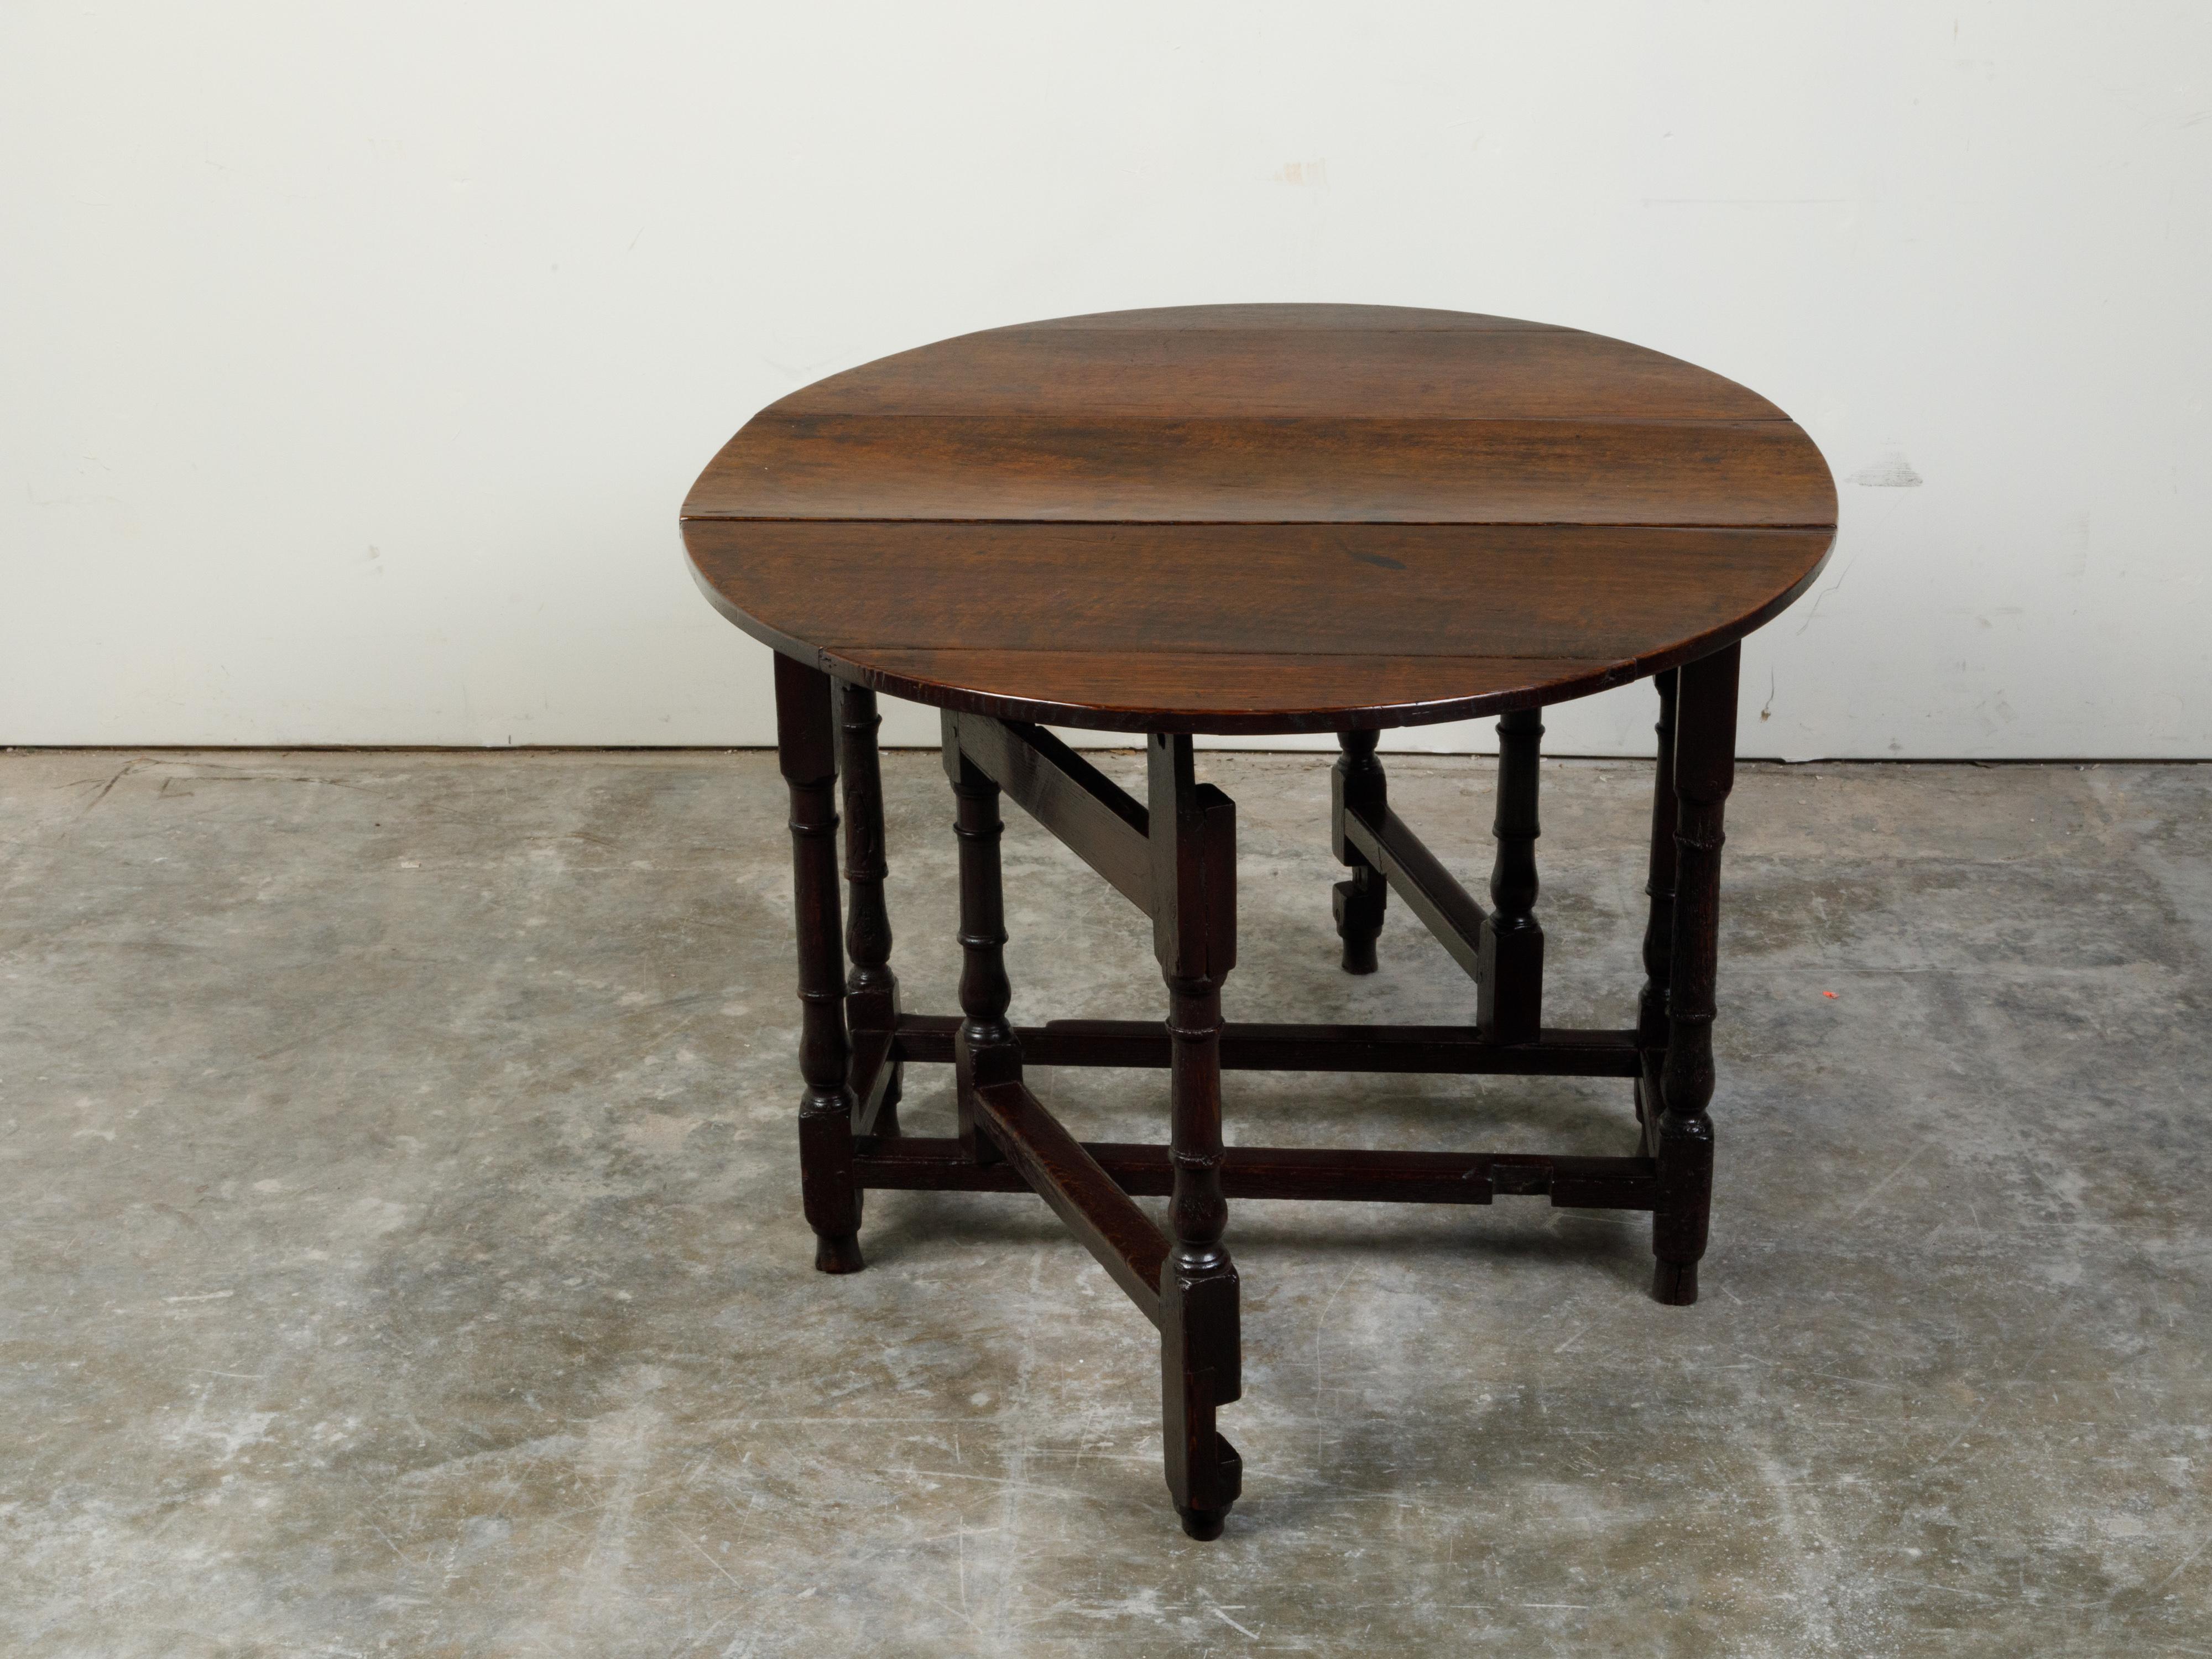 Une table rustique anglaise du 18ème siècle, avec un plateau ovale et des pieds tournés. Créée en Angleterre au XVIIIe siècle, cette table présente un plateau ovale composé de deux feuilles tombantes, reposant sur une base à pieds tournés. Accentuée